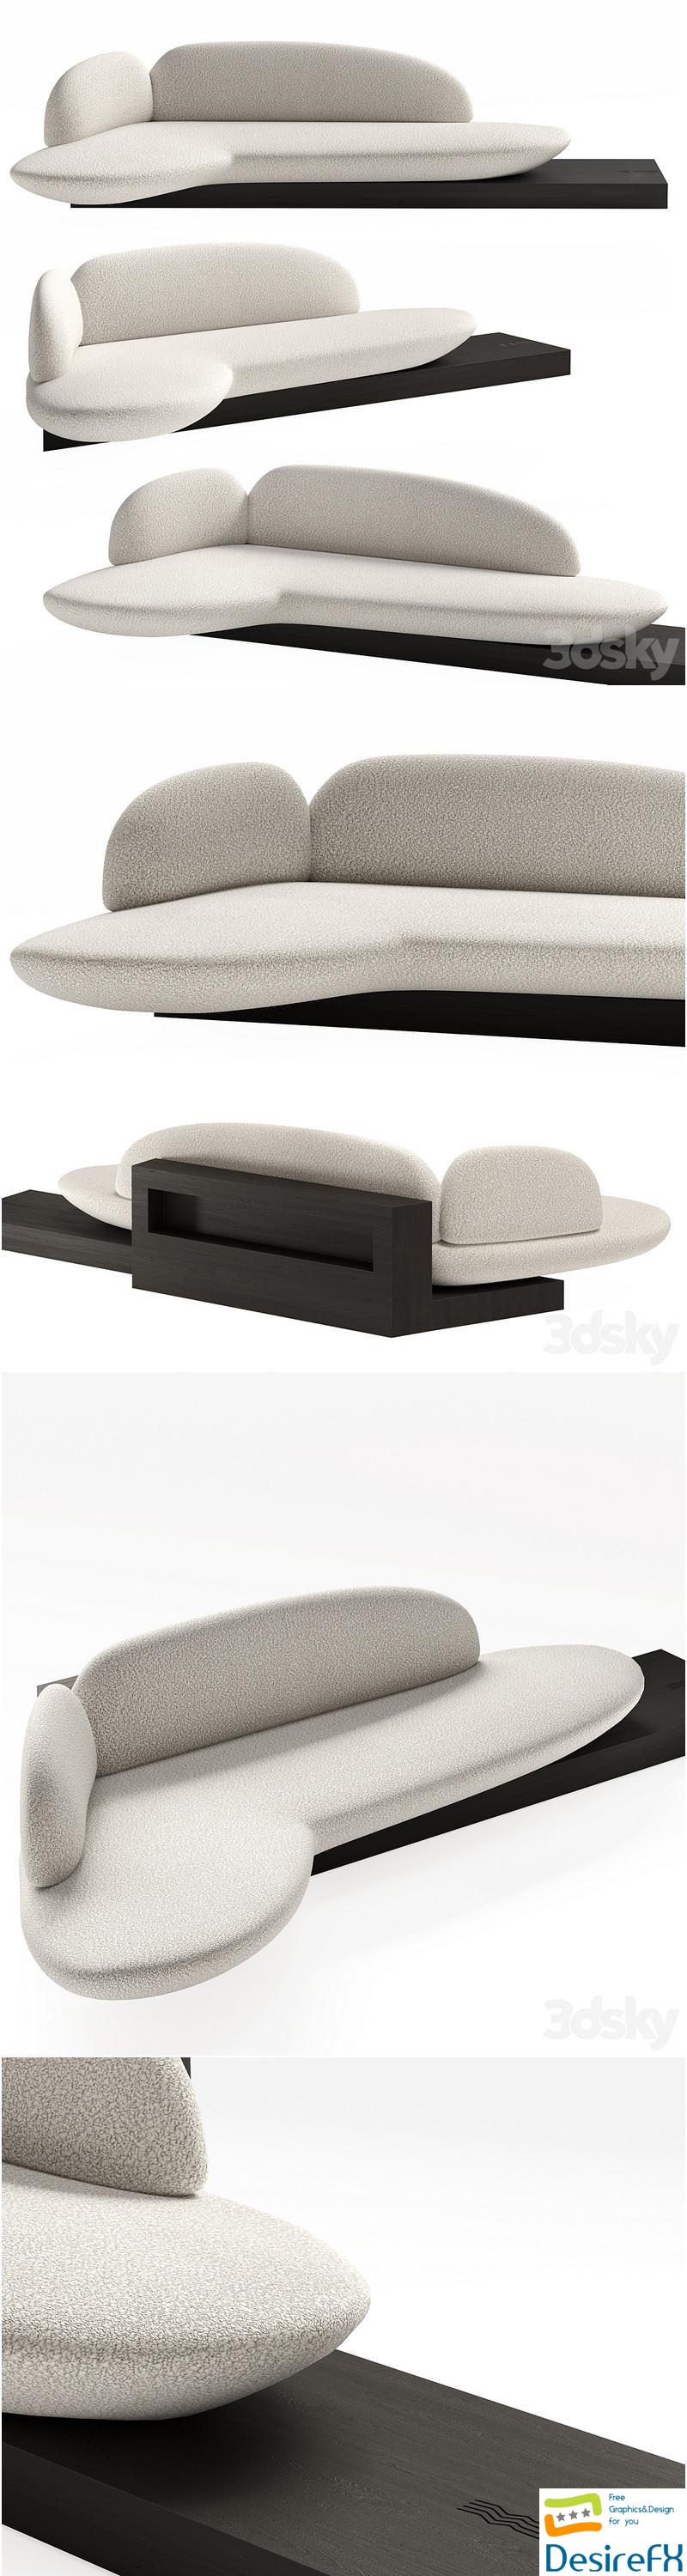 Origin large sofa by Jimmy Delatour 3D Model